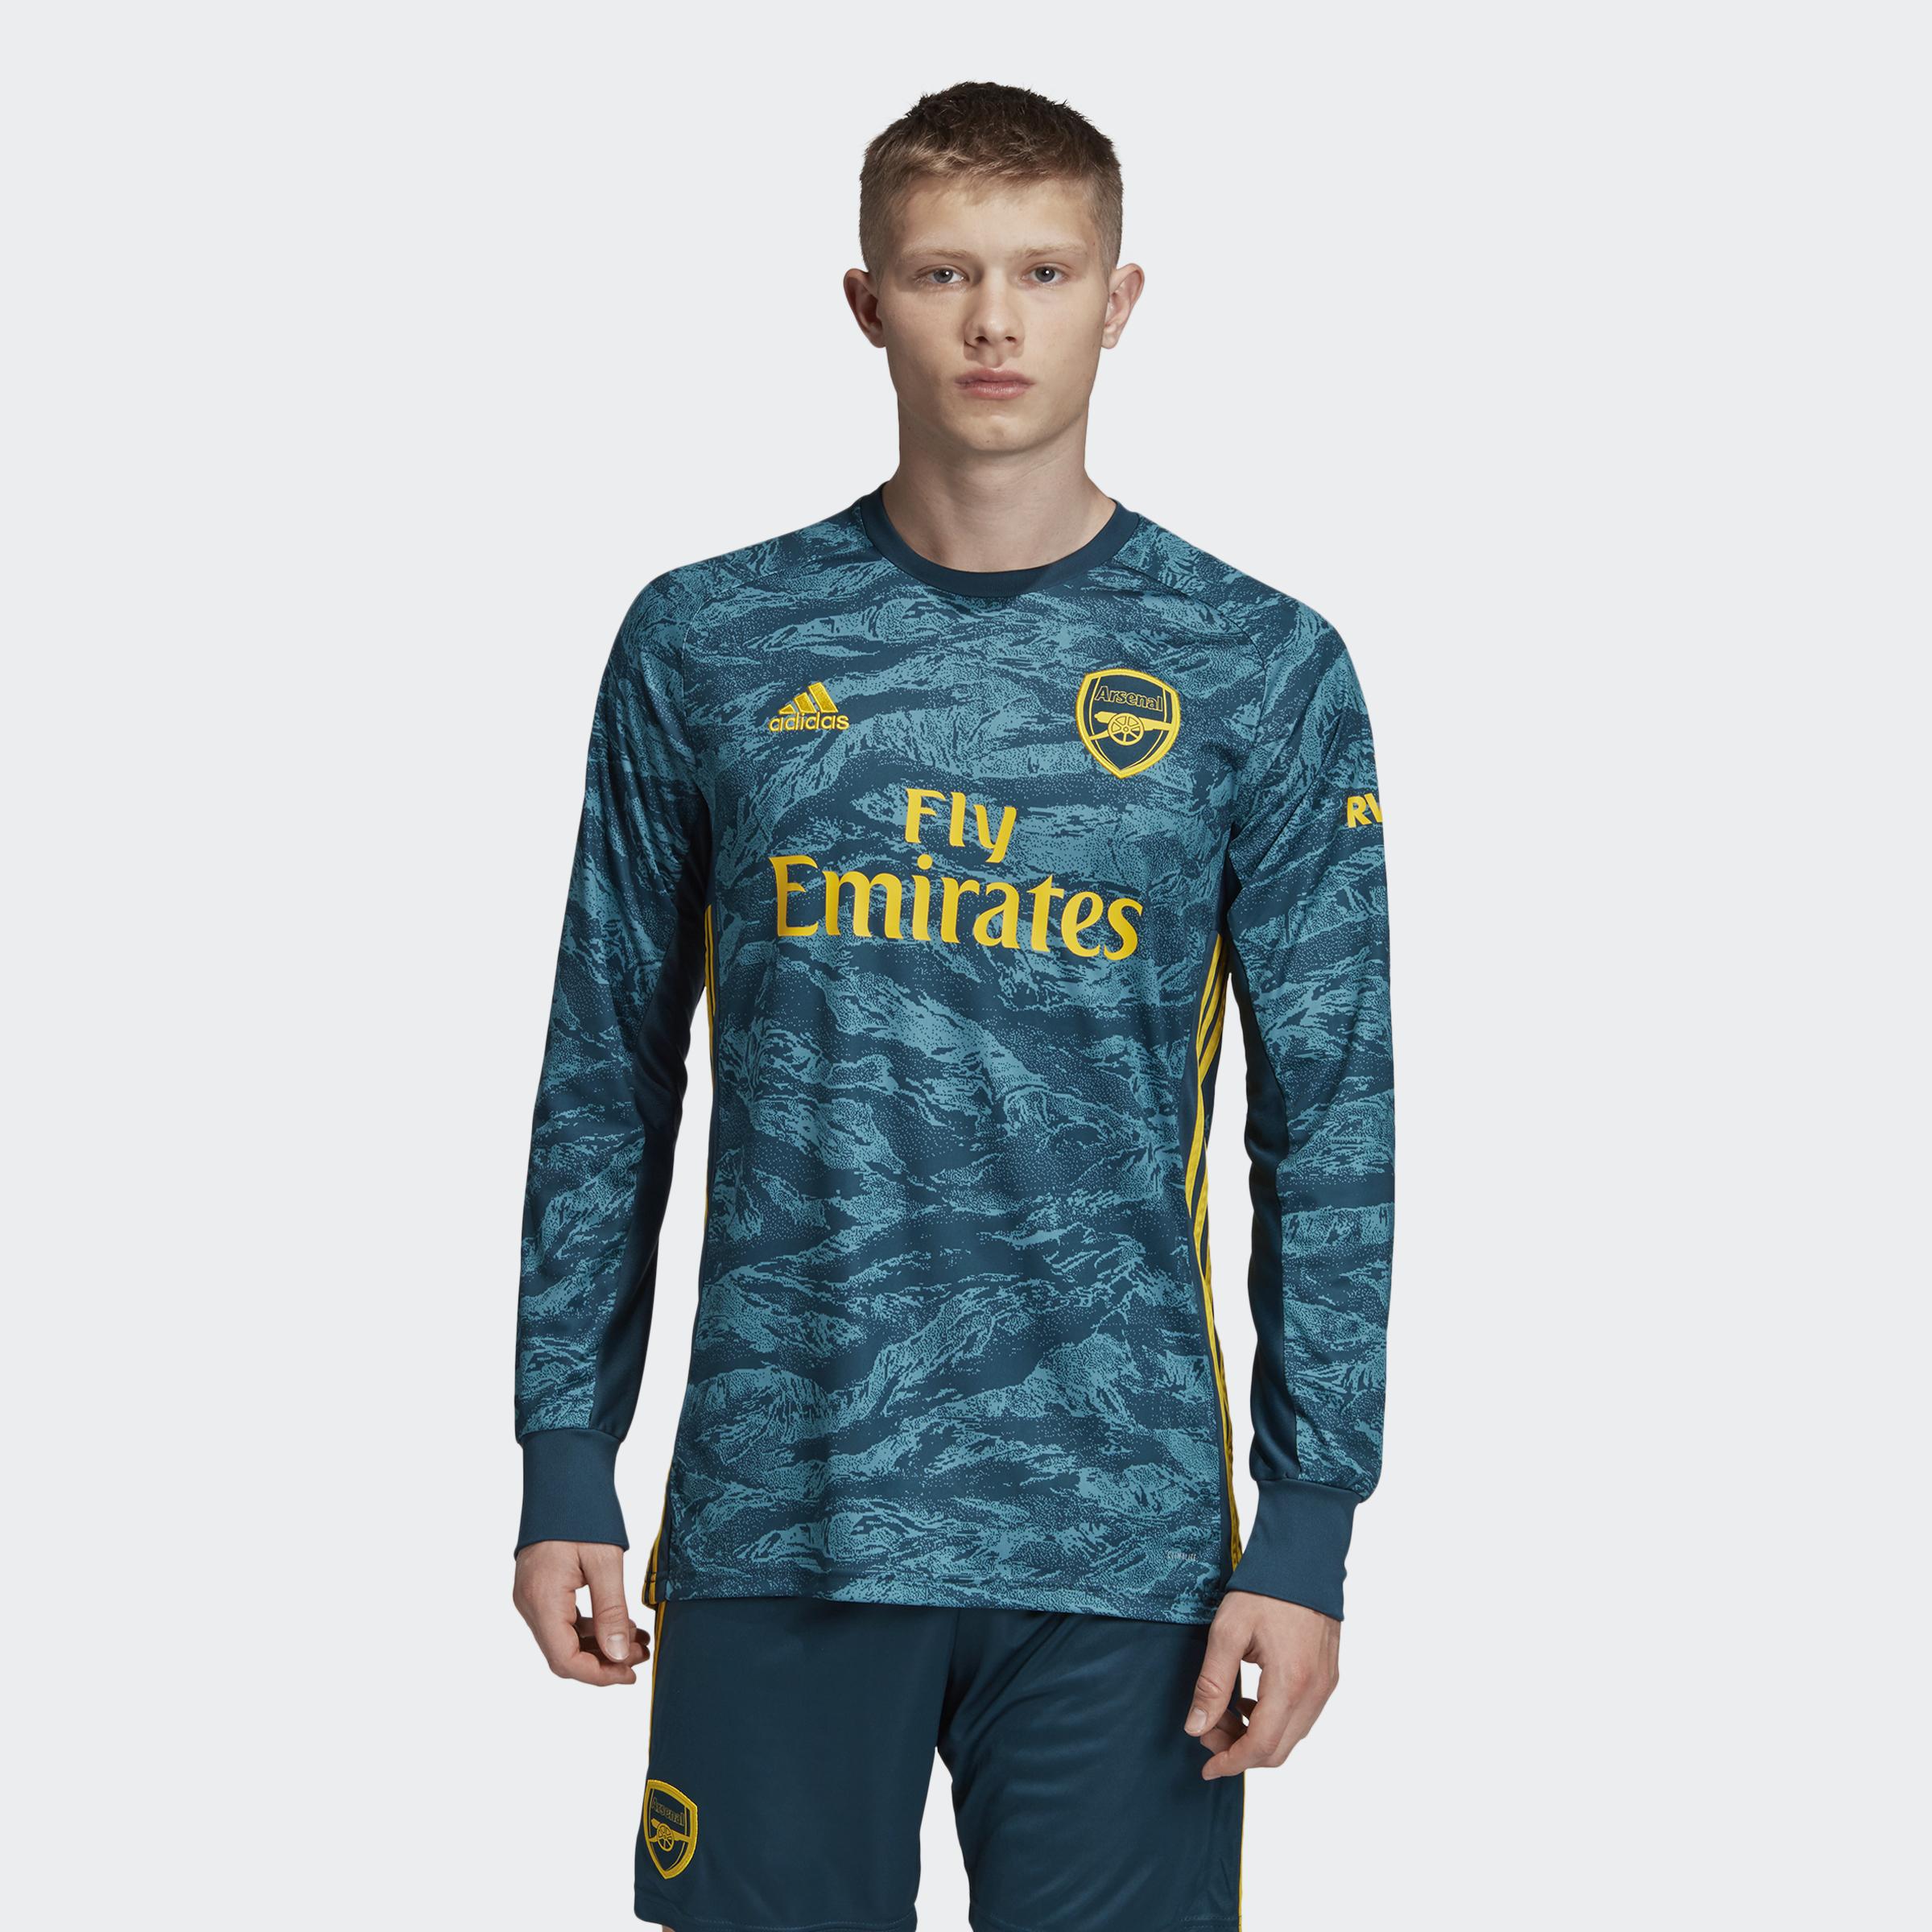 arsenal goalkeeper kit short sleeve jersey on sale